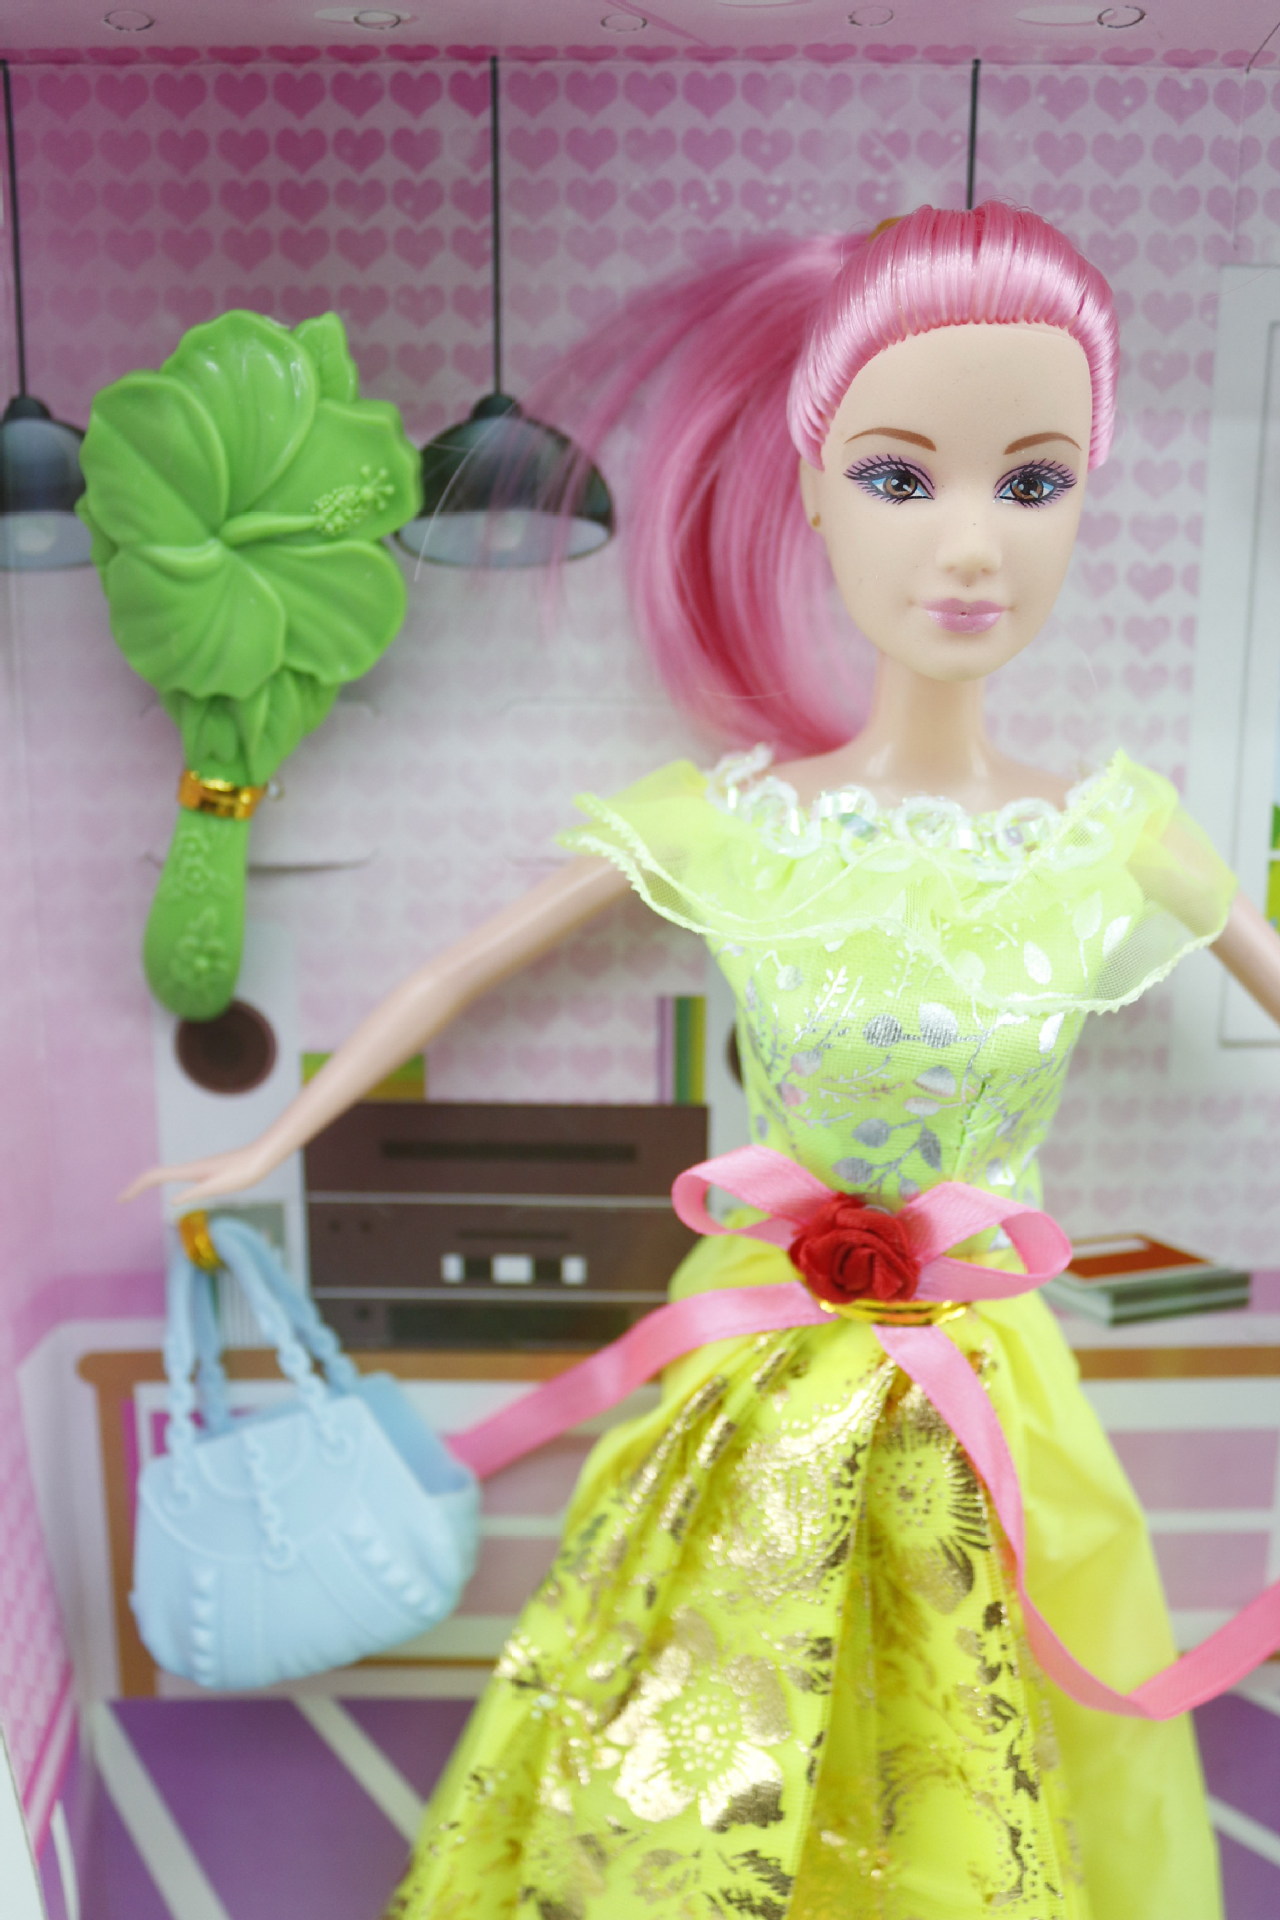 新款芭比娃娃 彩盒套装组合 芭比娃娃玩具 女孩子过家家玩